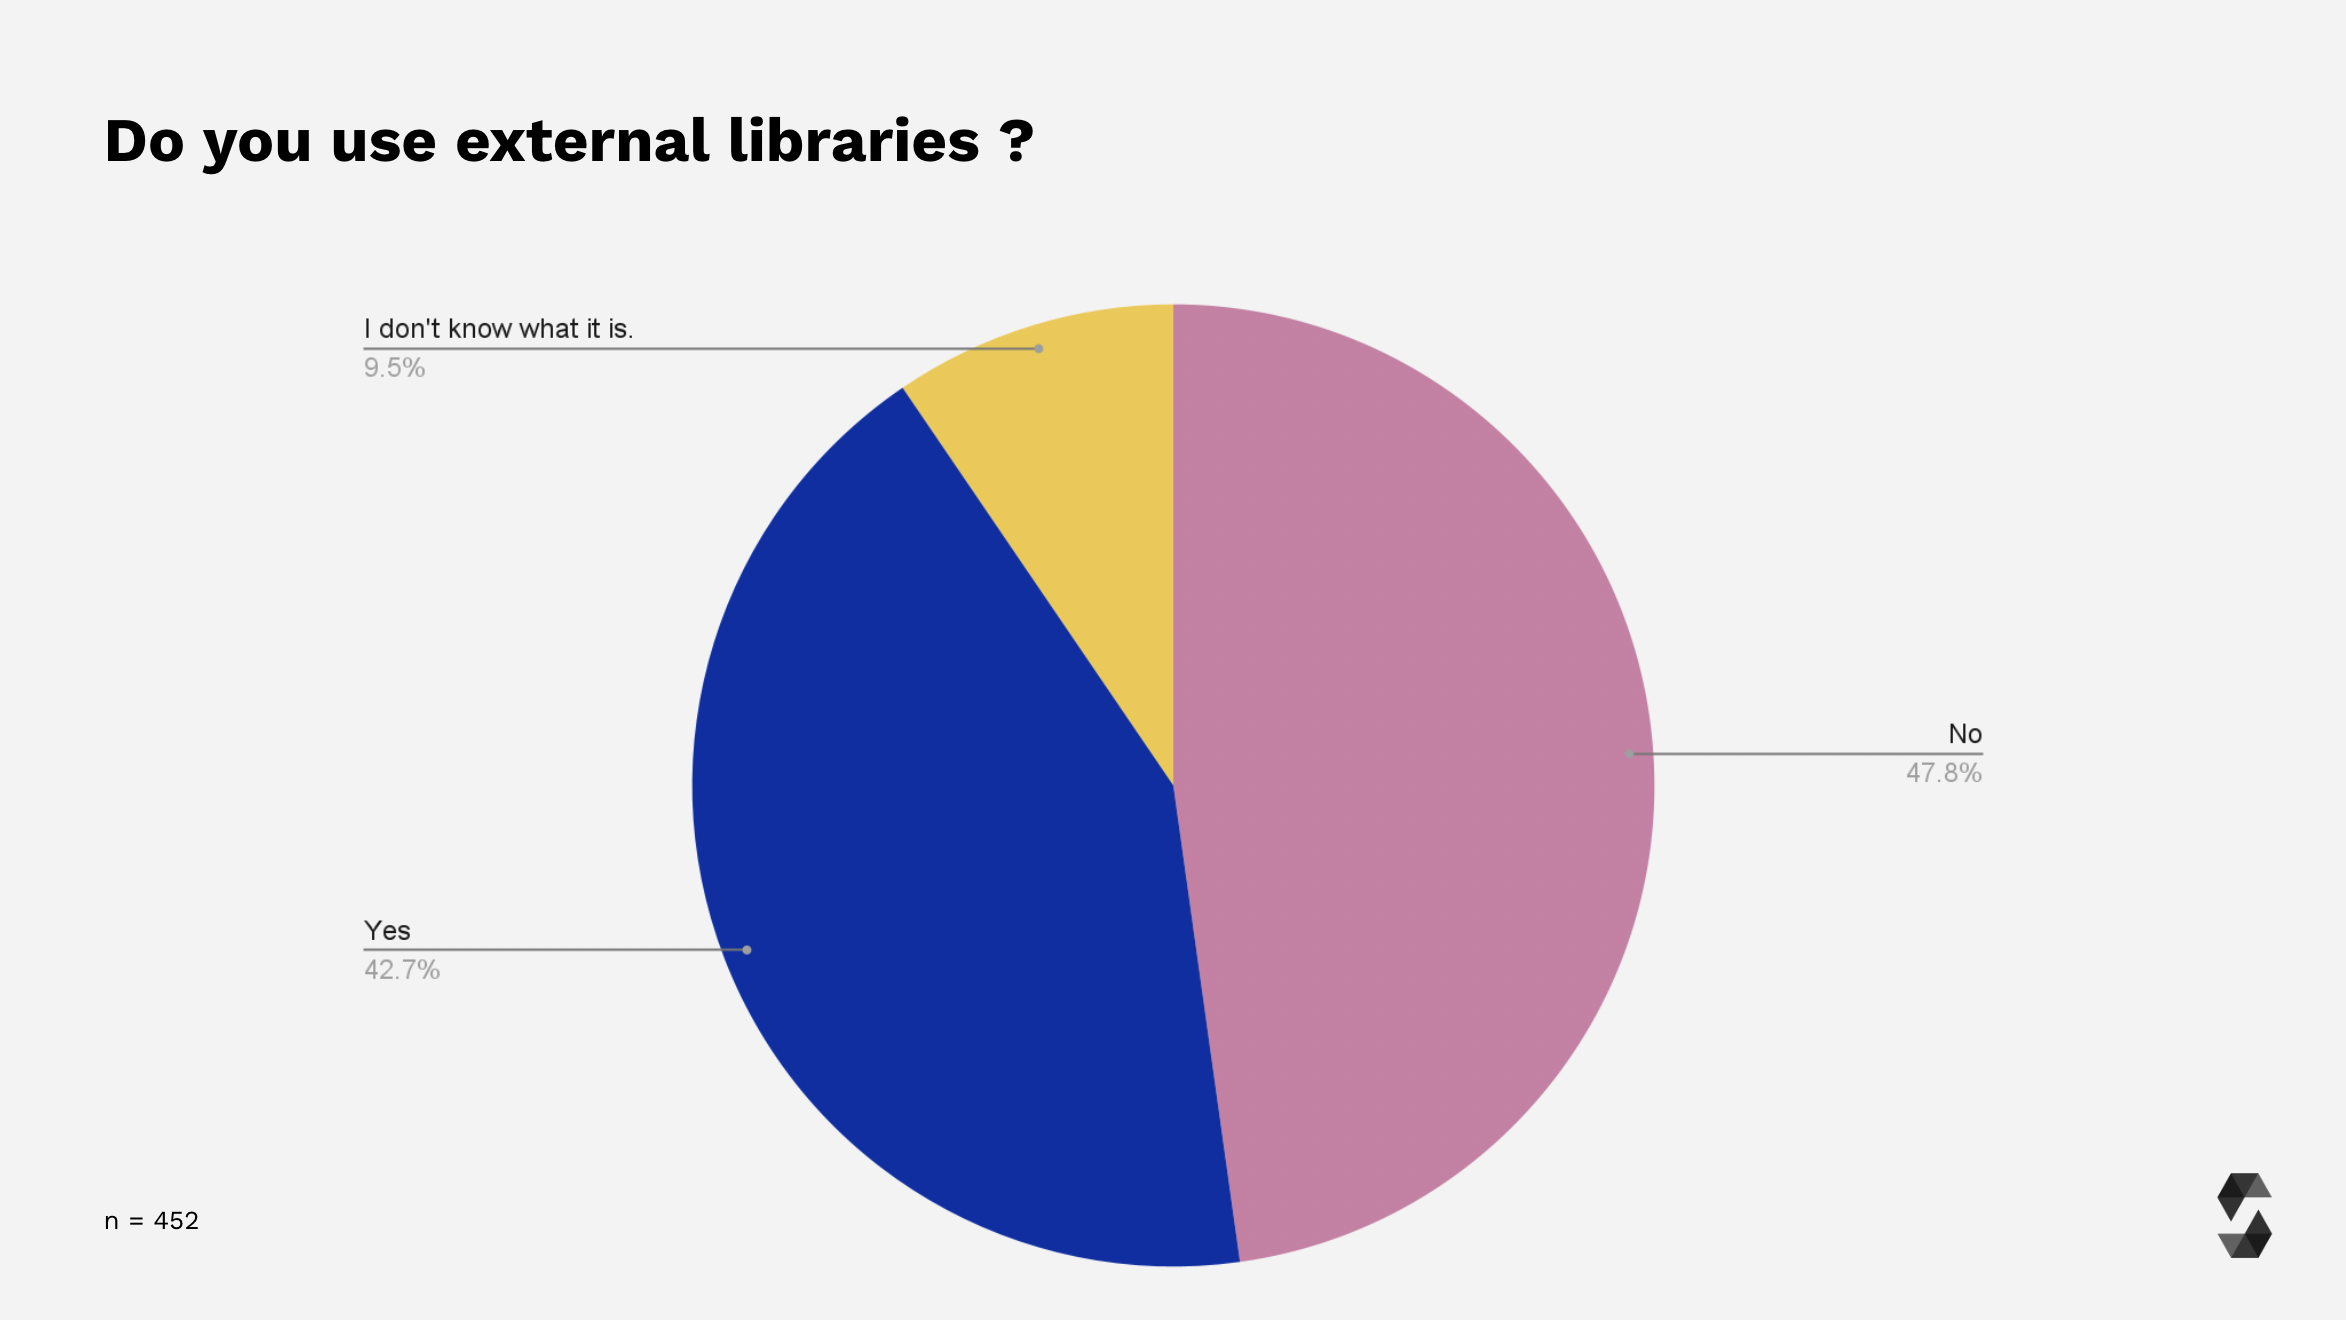 External libraries